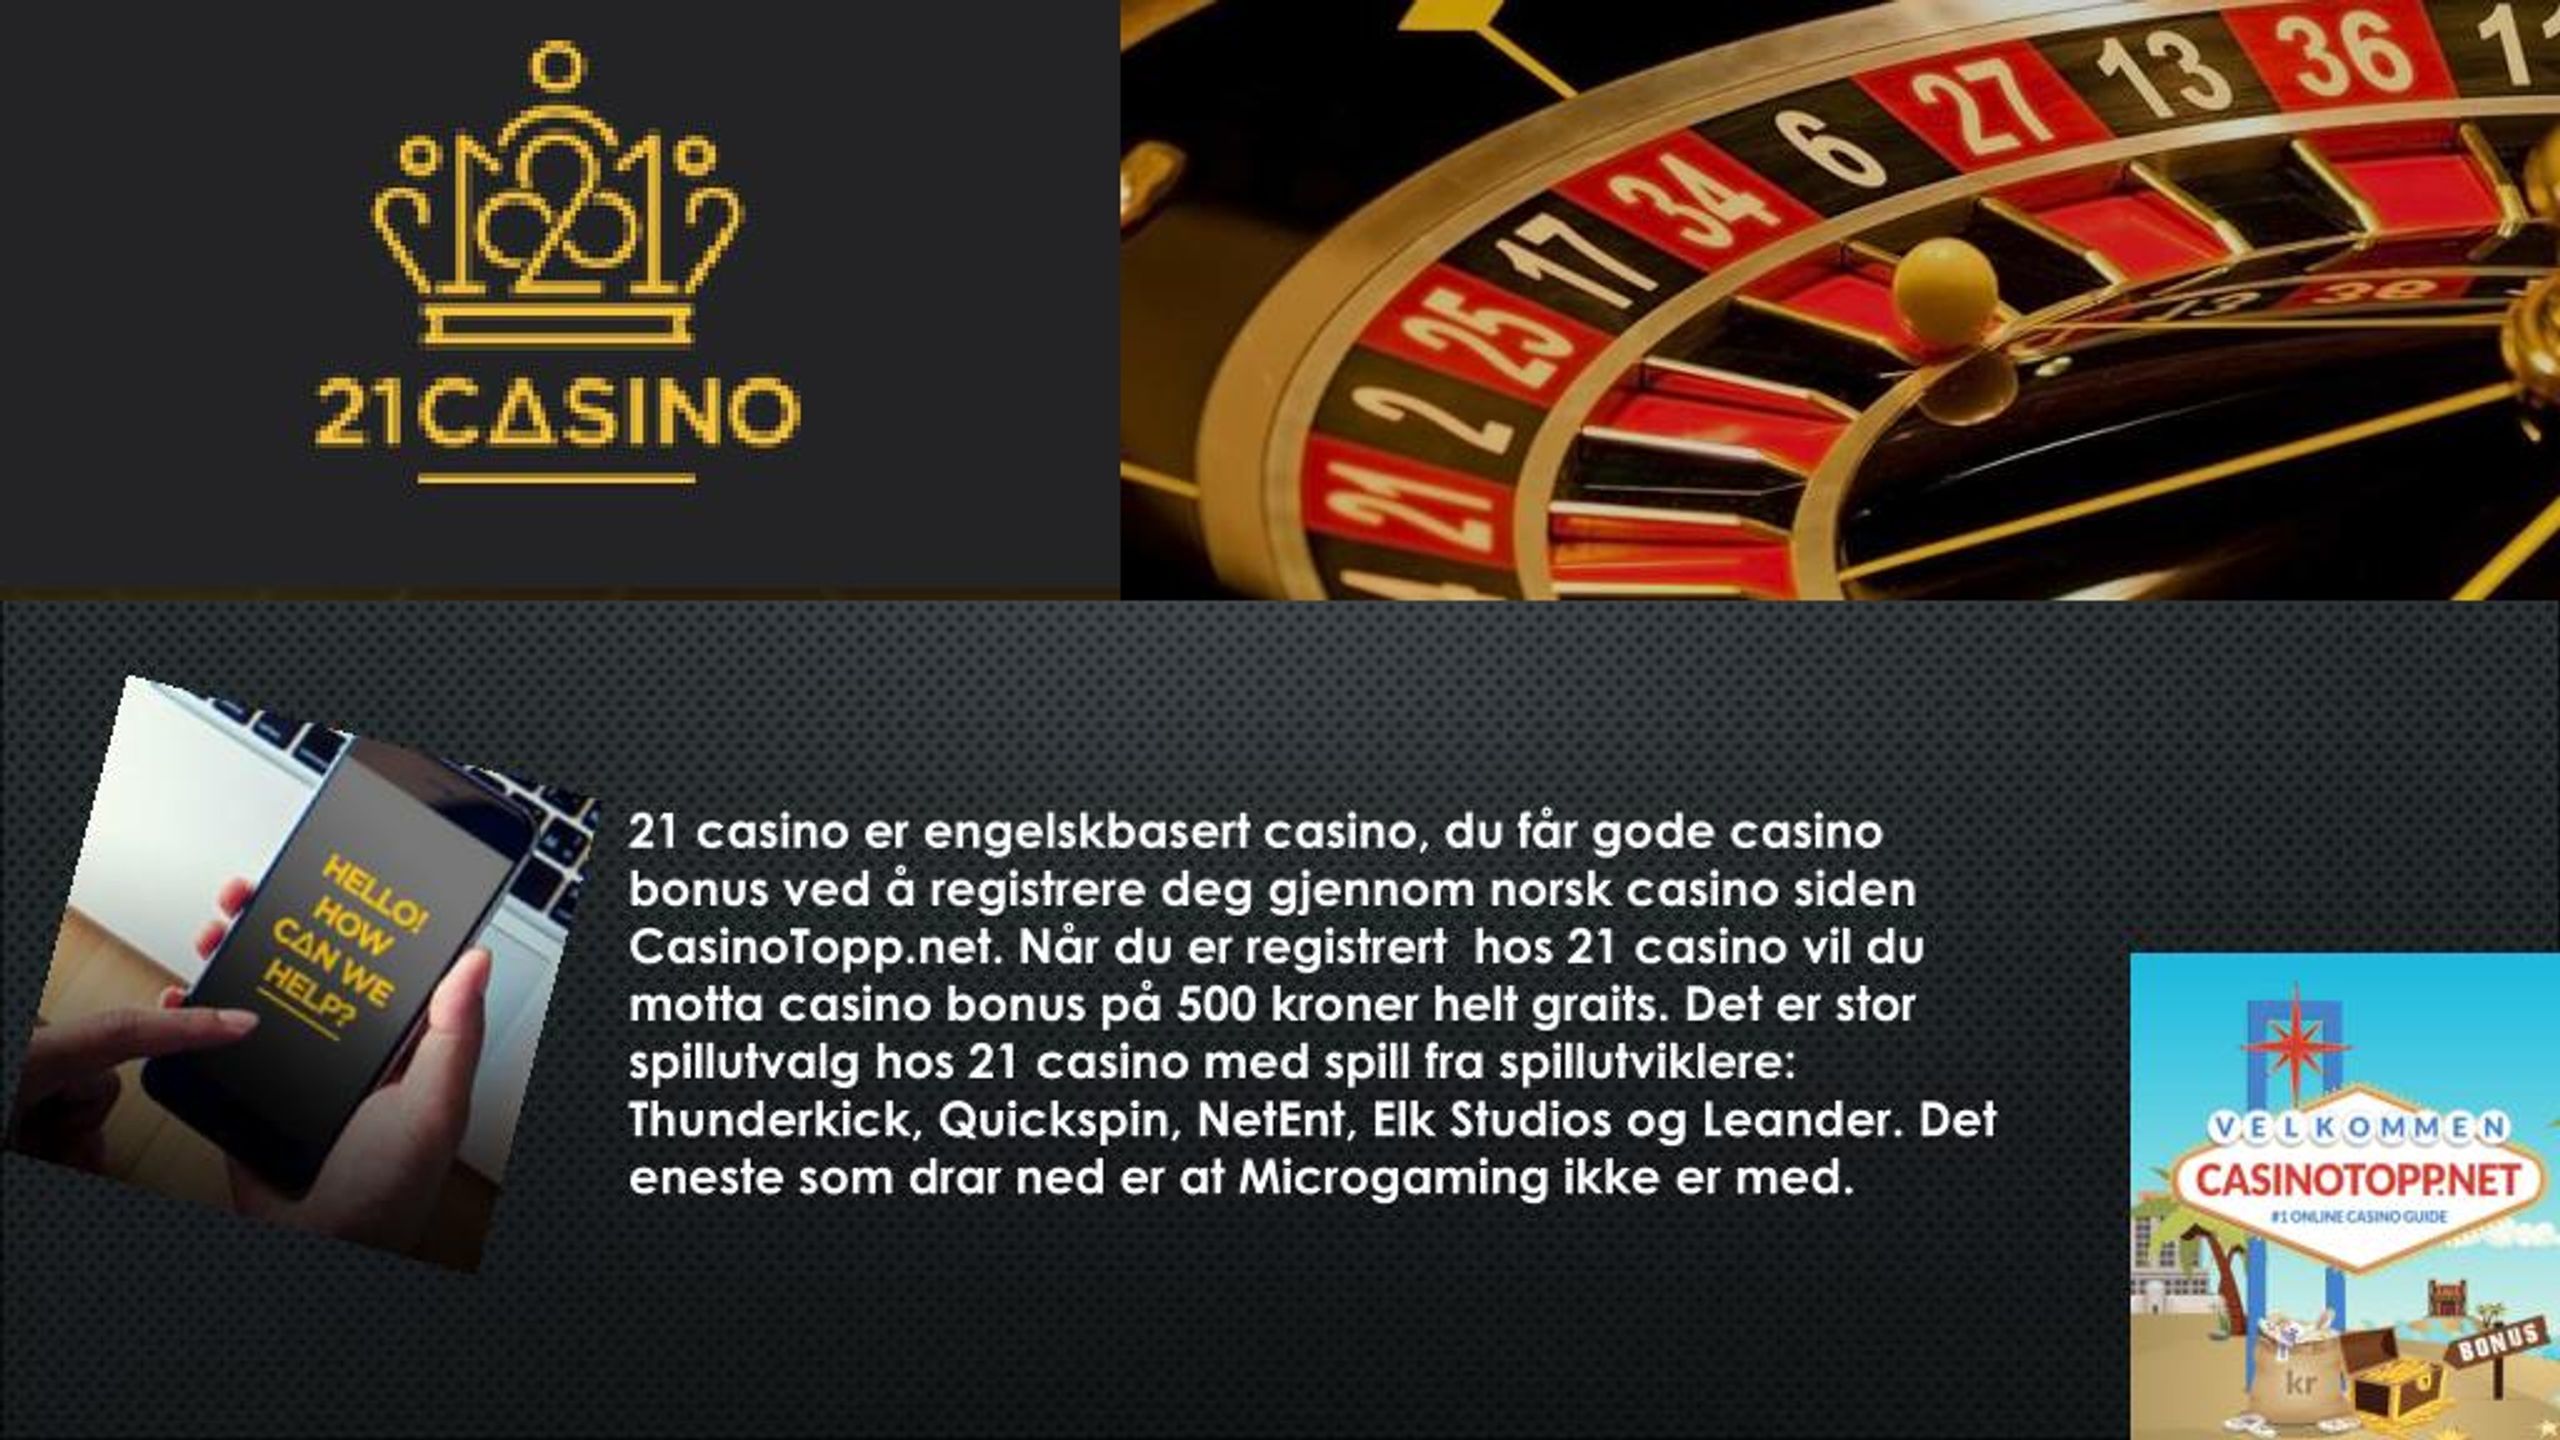 Casino x сегодня касинокс гет shop. Казино 21. Казино с бонусами на кошелек. Интернет казино Версаль.